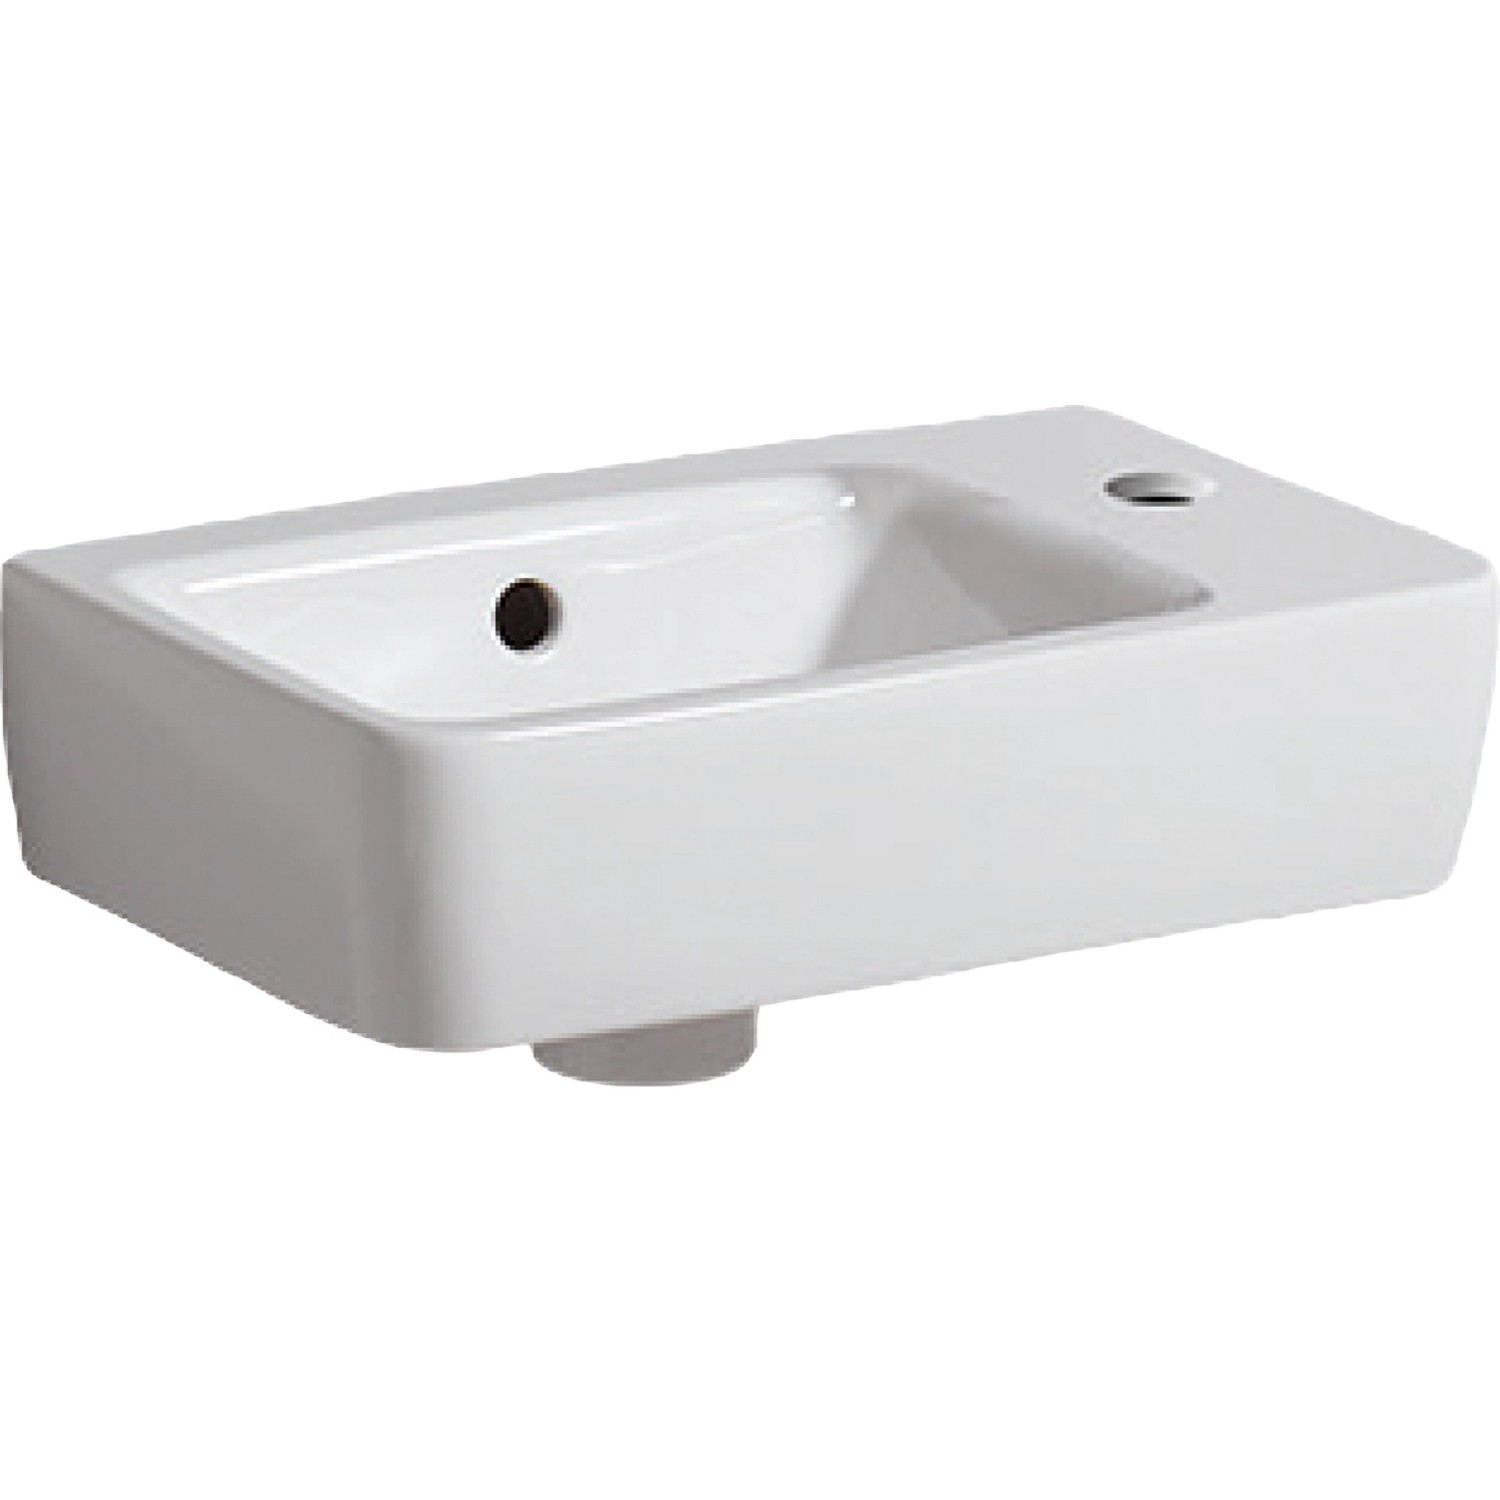 Geberit Handwaschbecken Renova Compact  40 cm Weiß KeraTect-Beschichtung